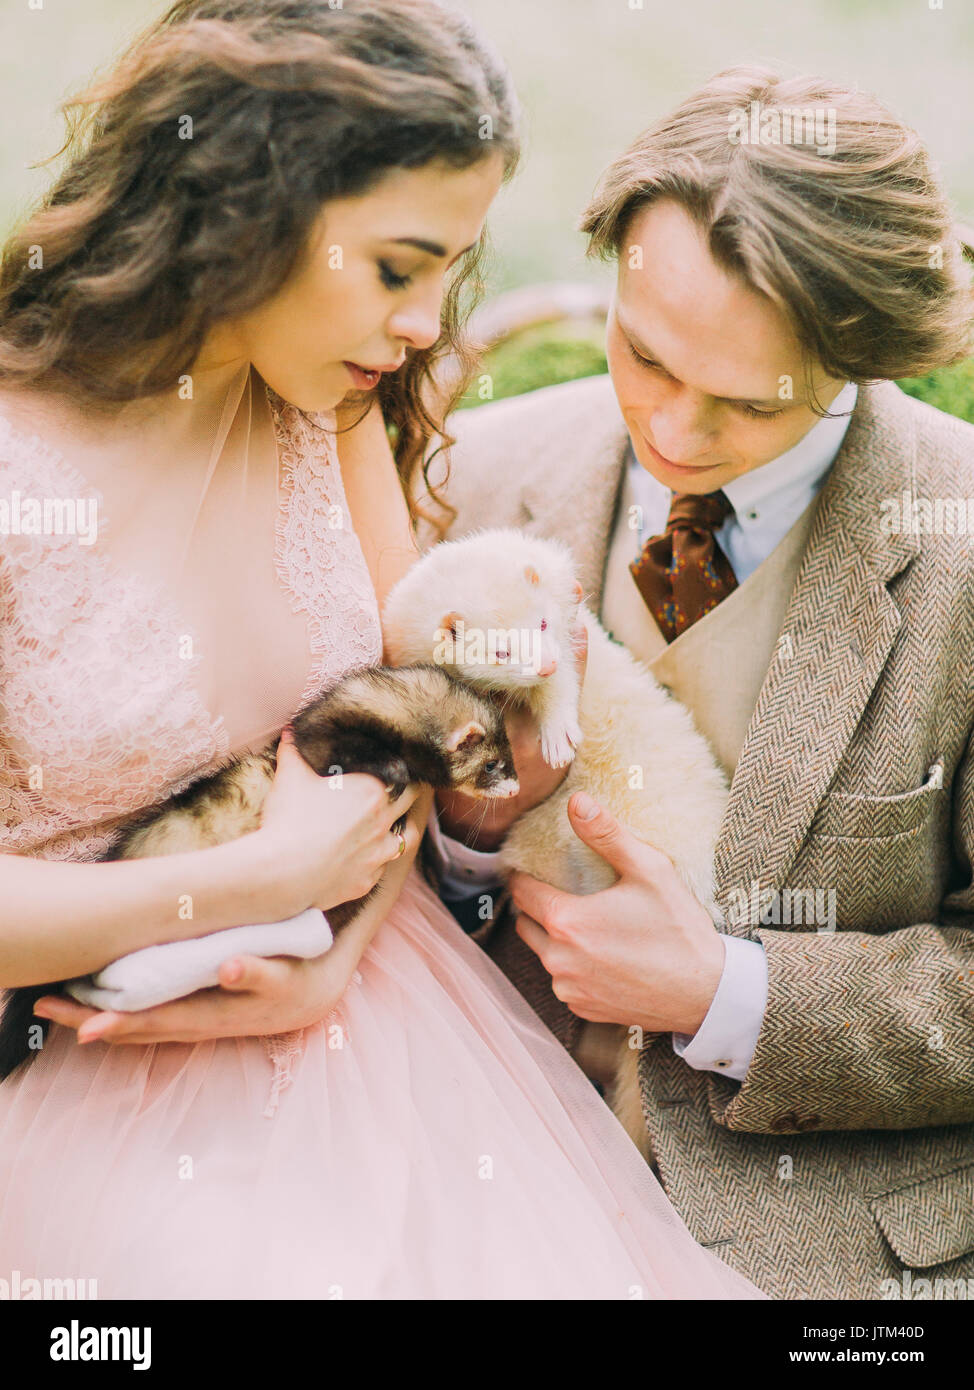 Das Foto der Vintage gekleidet Just married Holding die braunen und weißen Frettchen und genießen die Zeit im grünen Frühling Holz. Stockfoto